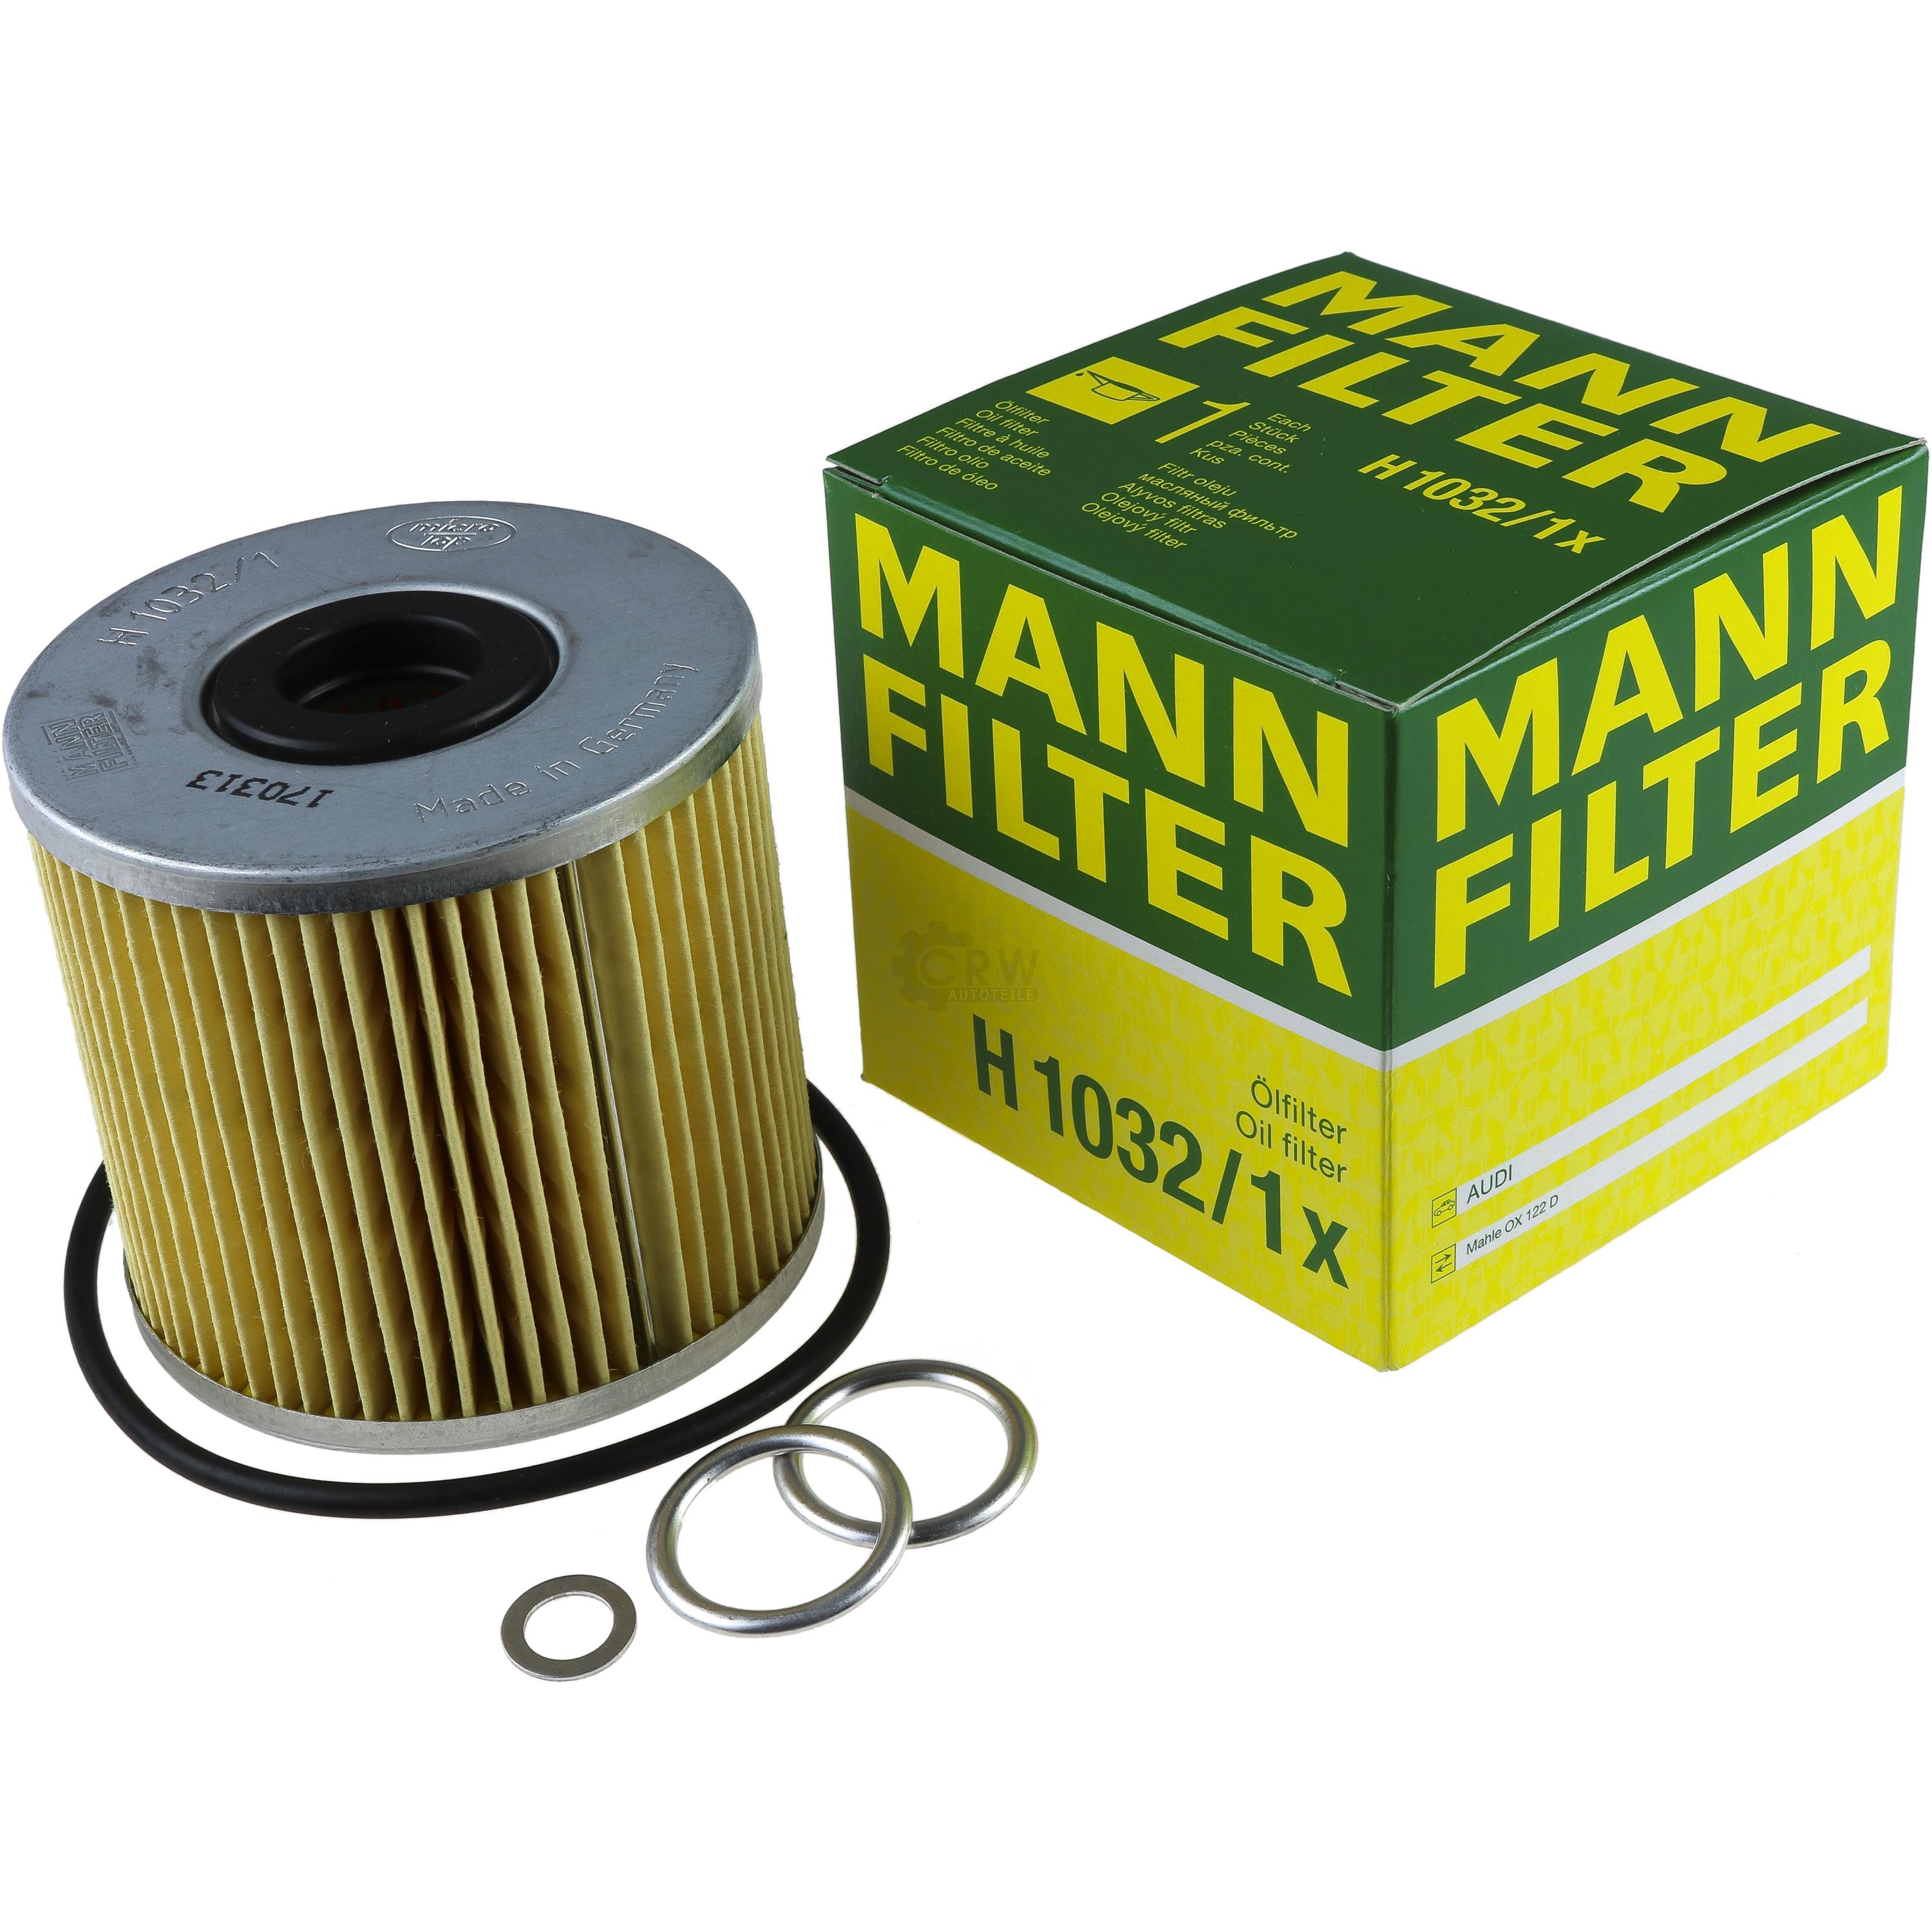 MANN-FILTER Ölfilter Oelfilter H 1032/1 x Oil Filter